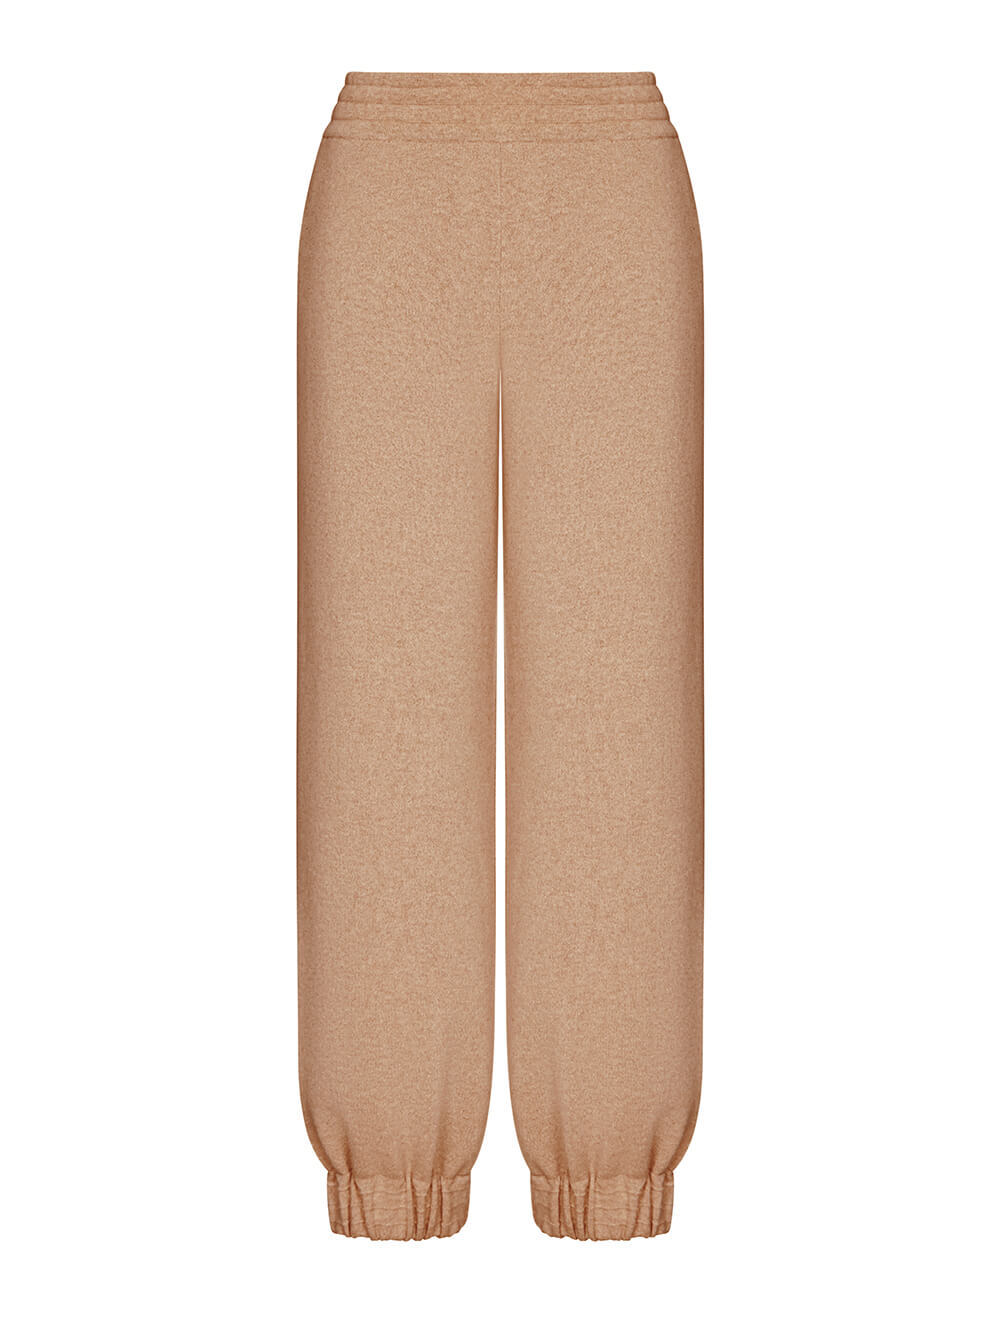 Женские брюки темно-бежевого цвета из 100% кашемира